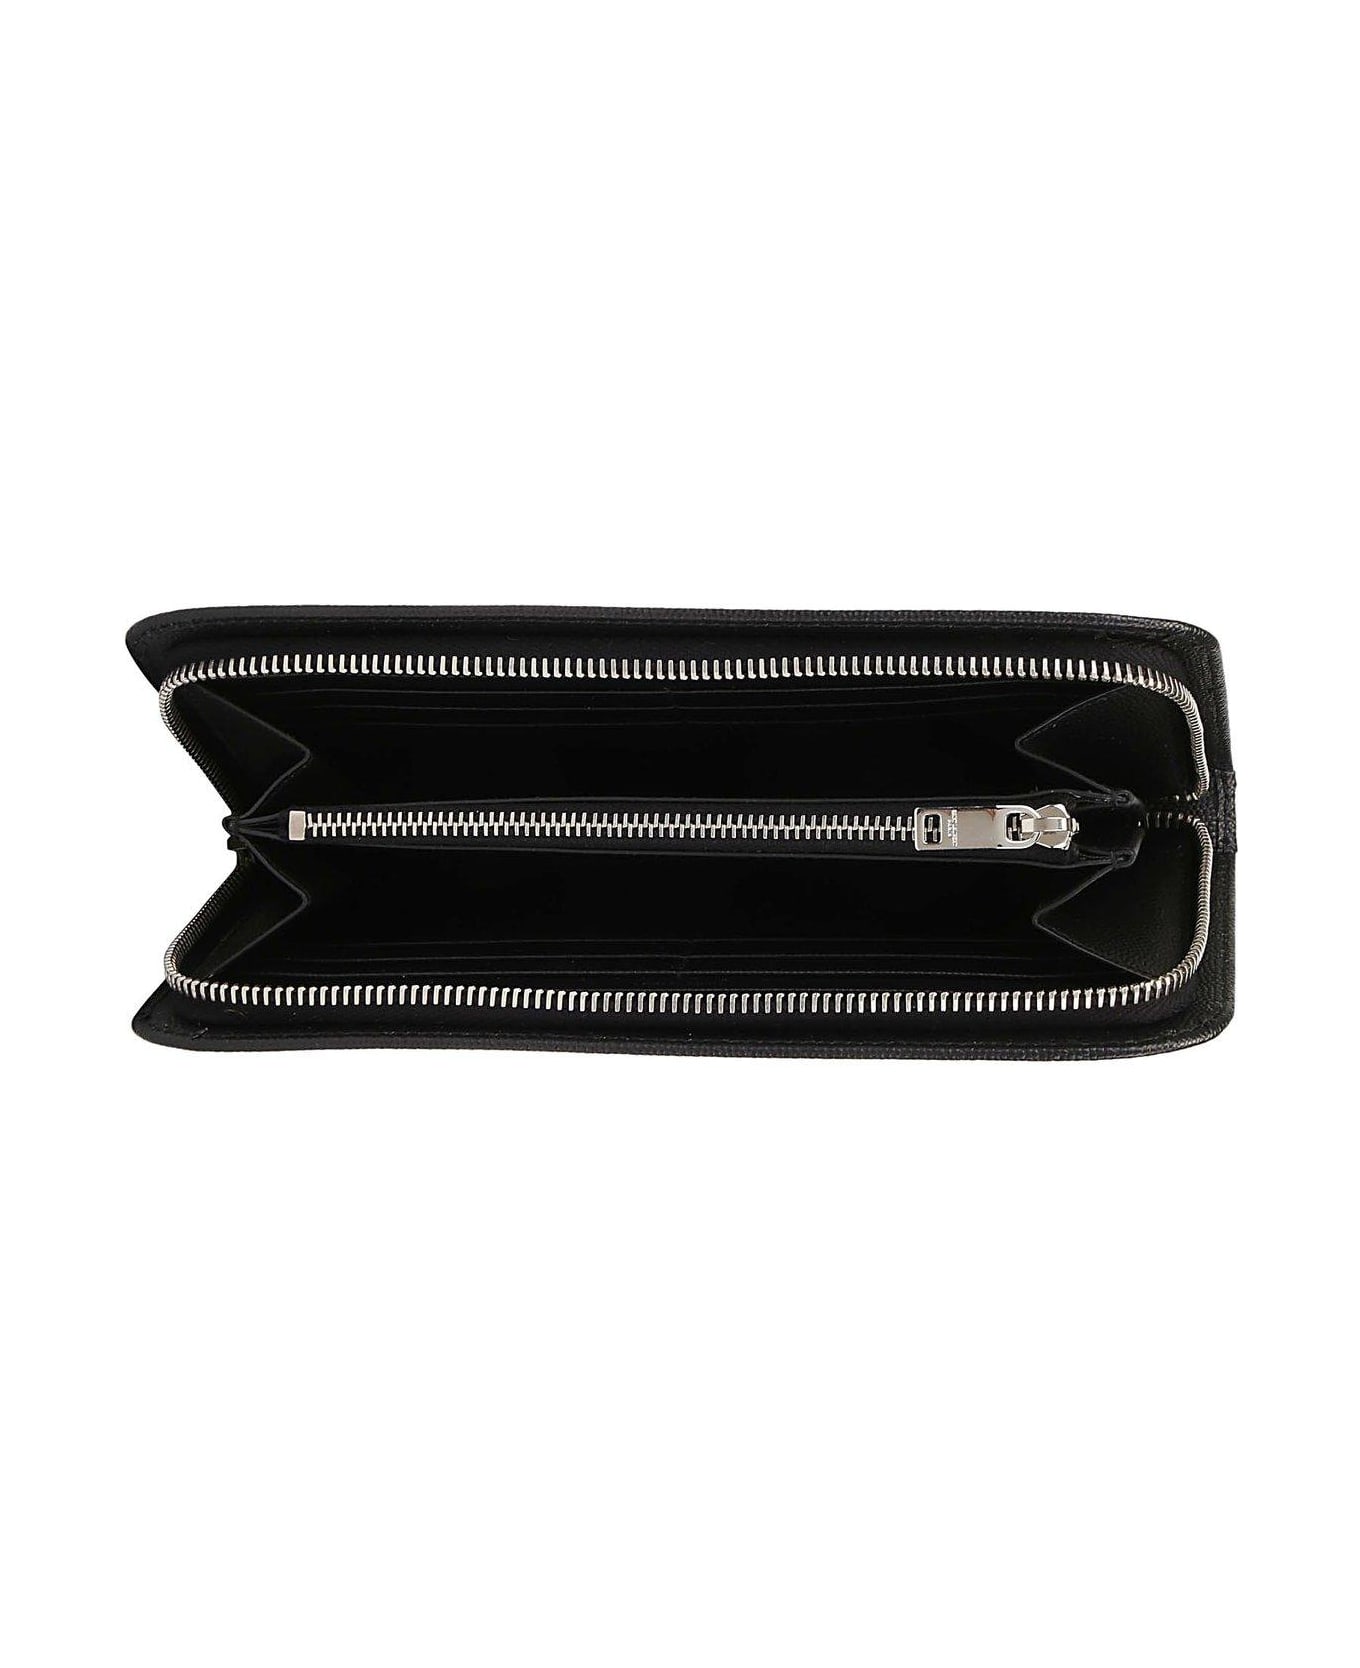 Saint Laurent Black Leather Wallet - Nero 財布